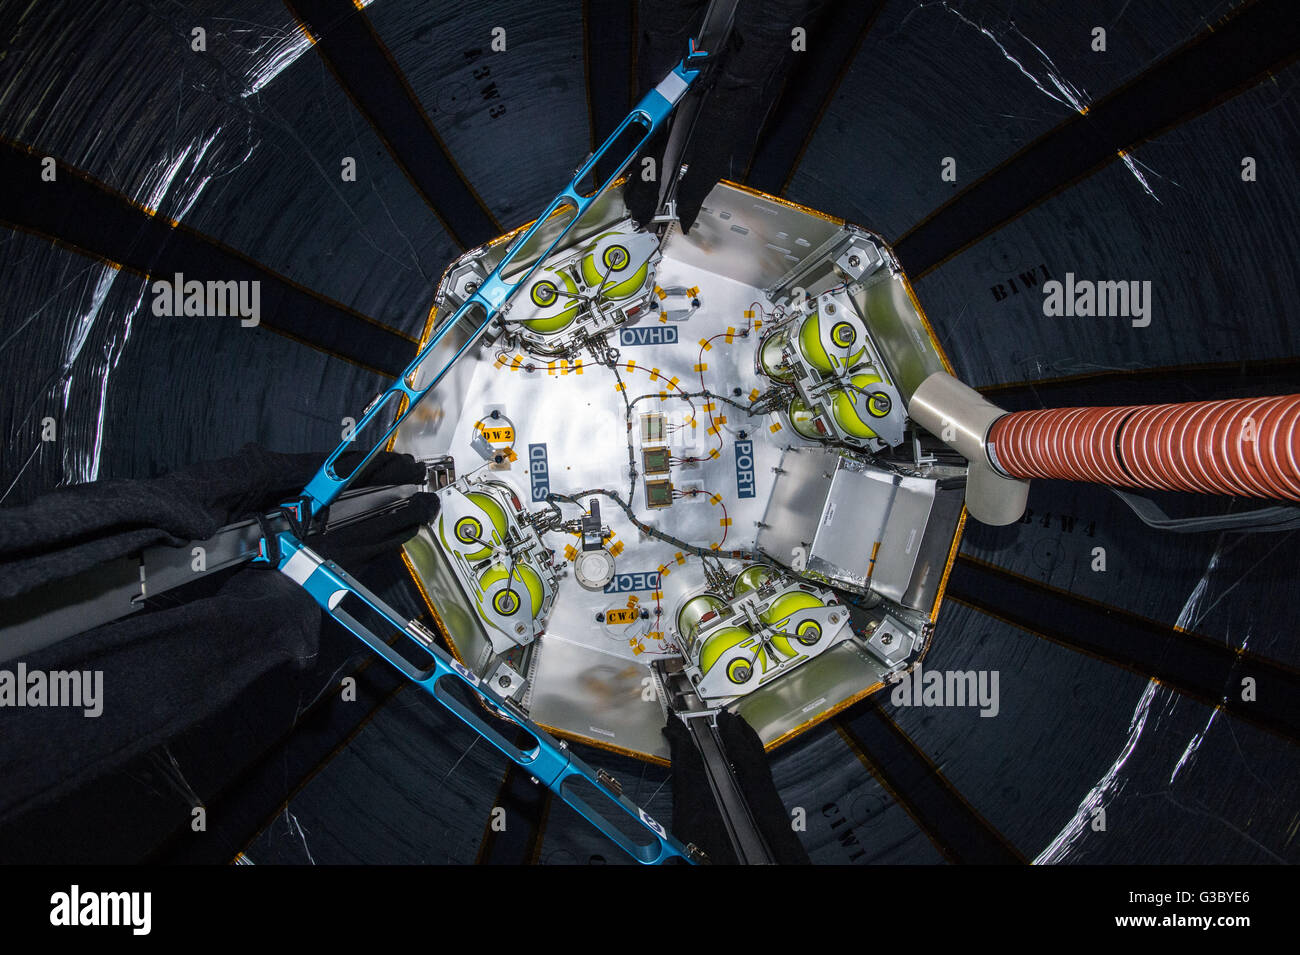 Die Innenansicht der Bigelow erweiterbar Aktivitäten-Modul während der Installation des Sensors nach erfolgreicher Expansion an Bord der internationalen Raumstation ISS-Expedition 7. Juni 2016 in der Erdumlaufbahn. NASA testet die Strahl-Modul zum ersten Mal im Raum. Stockfoto